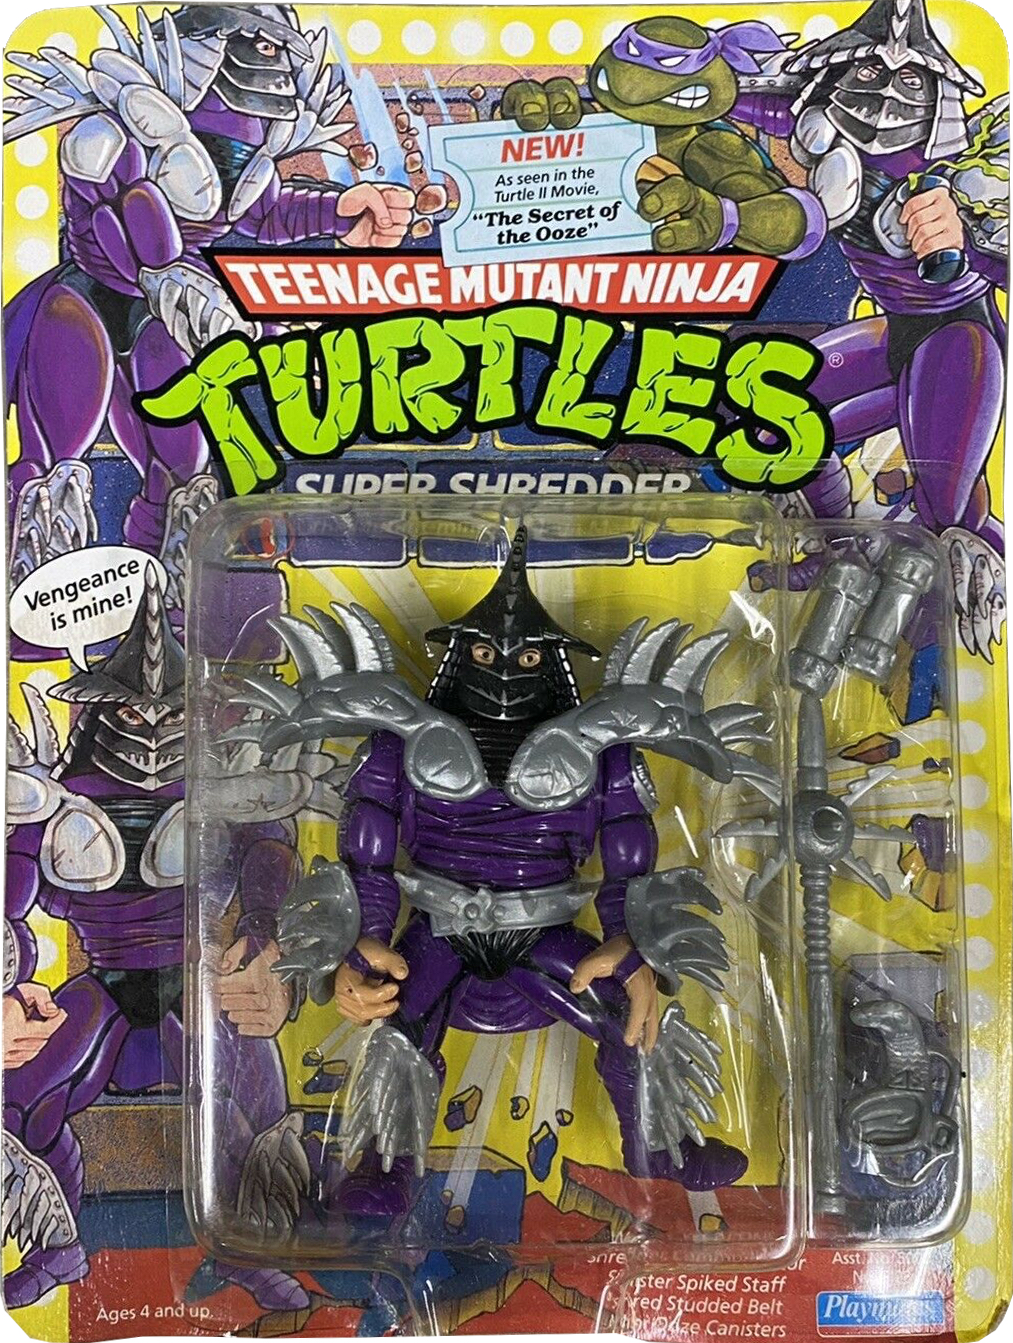 Teenage Mutant Ninja Turtles TMNT (2012) Shredder Playmates Figure 